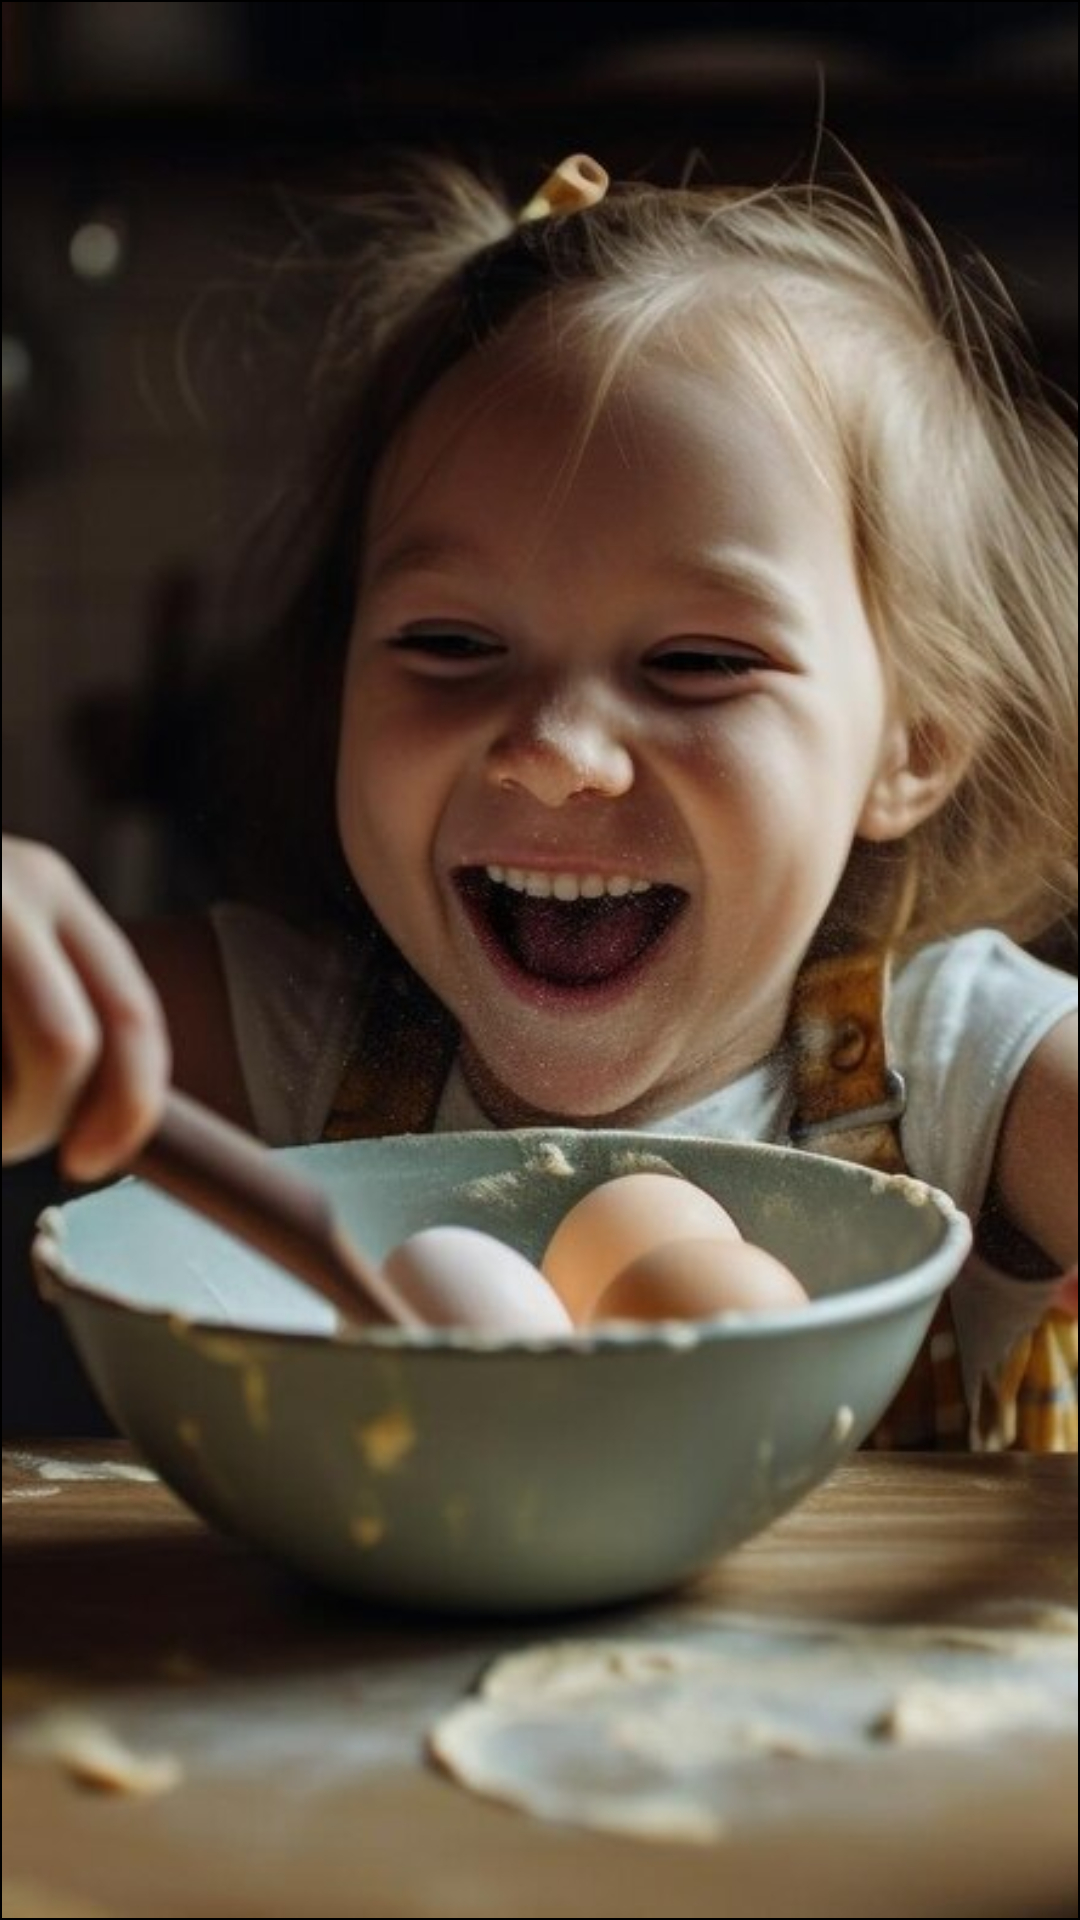  बच्चों के किस उम्र में खिलाना चाहिए अंडा, ये है सही तरीका